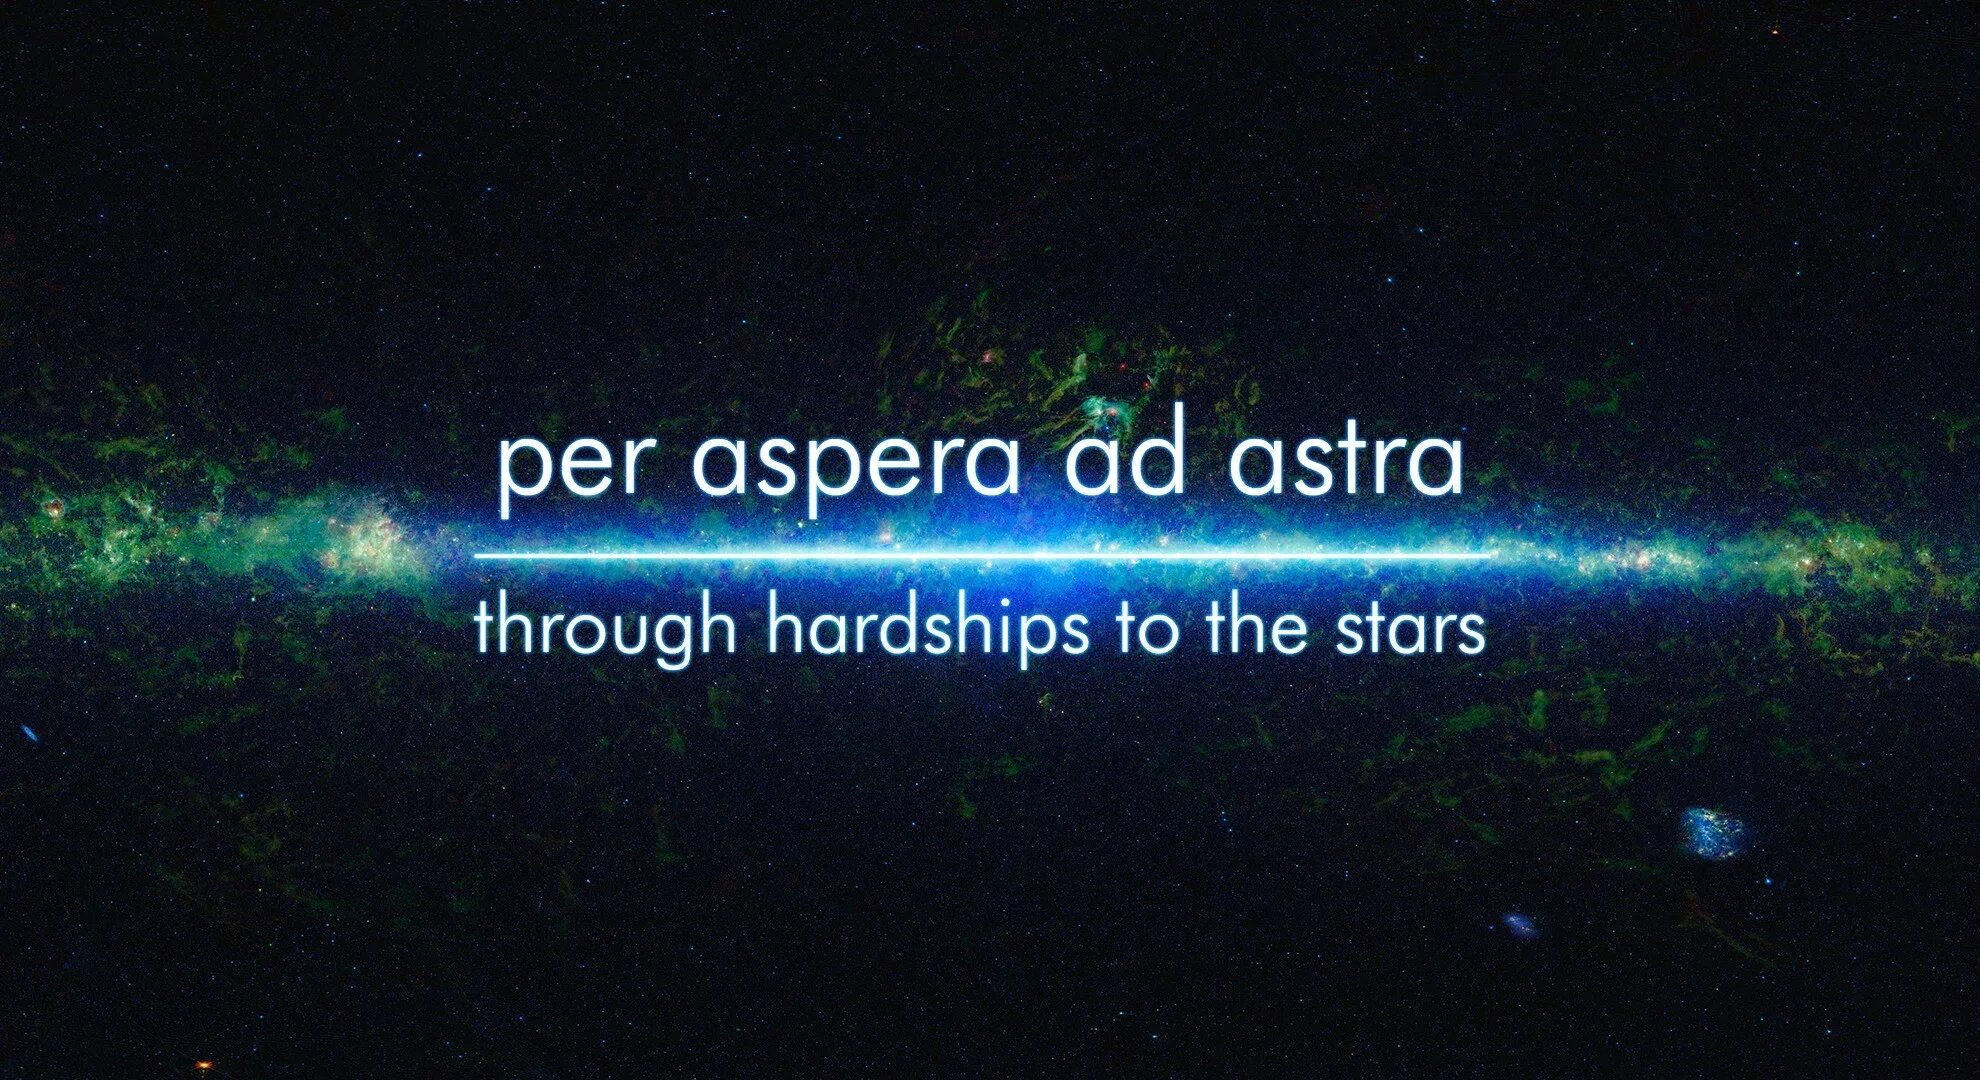 Per aspera ad Astra через тернии к звездам. Per aspera ad Astra обои. Через Терни к звёздам на латыни.